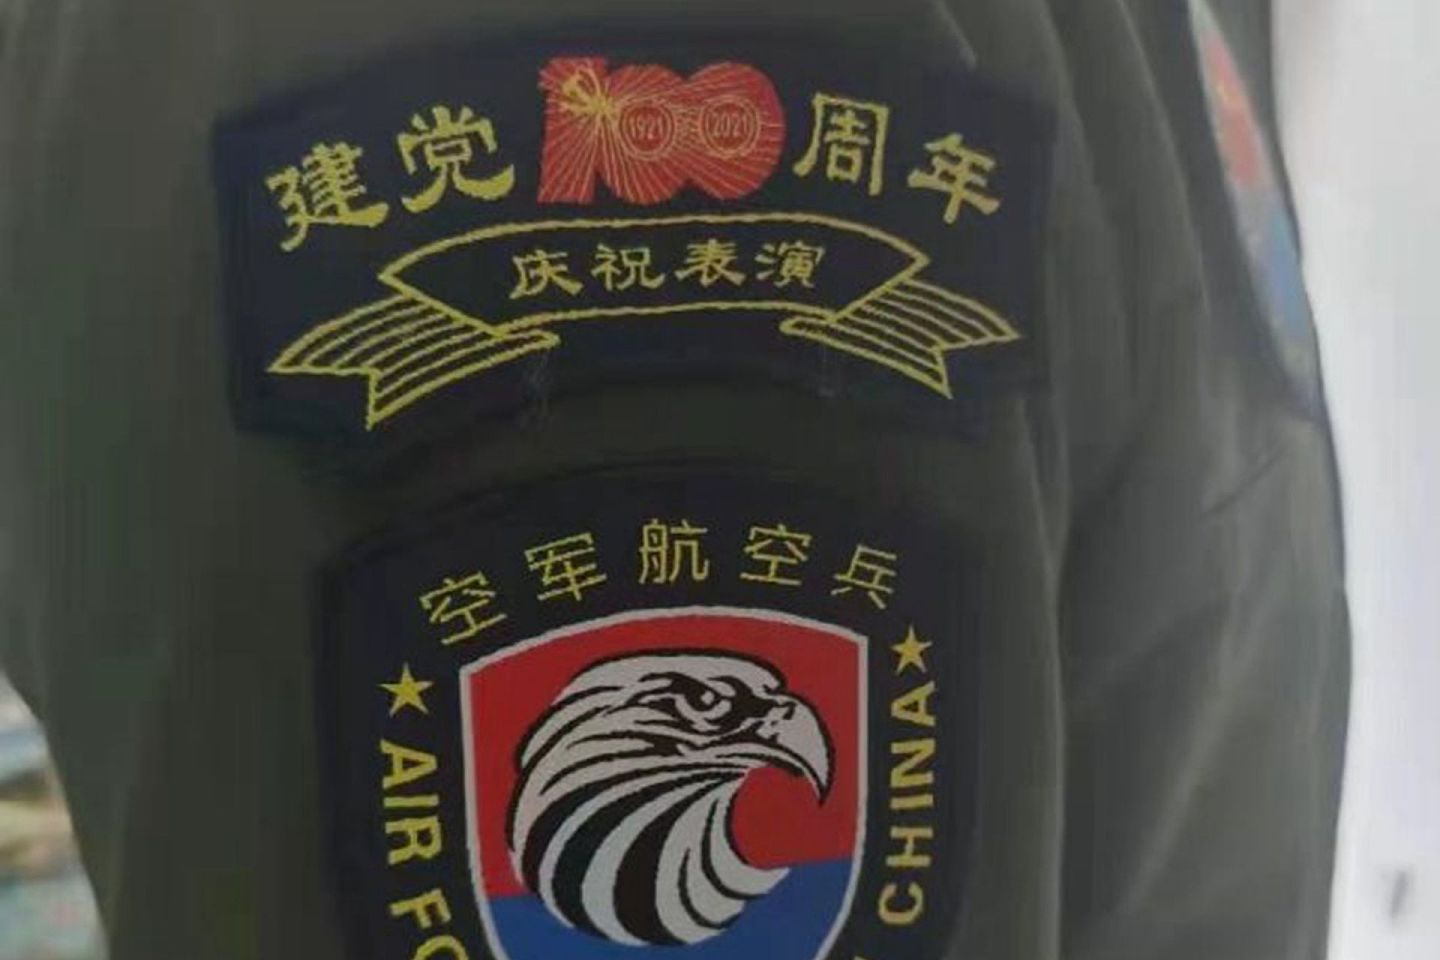 2021年7月1日，北京上空将有空中表演活动。图为中国空军航空兵臂章，显示有“建党100周年庆祝表演”。（微博@老虎哥来了）